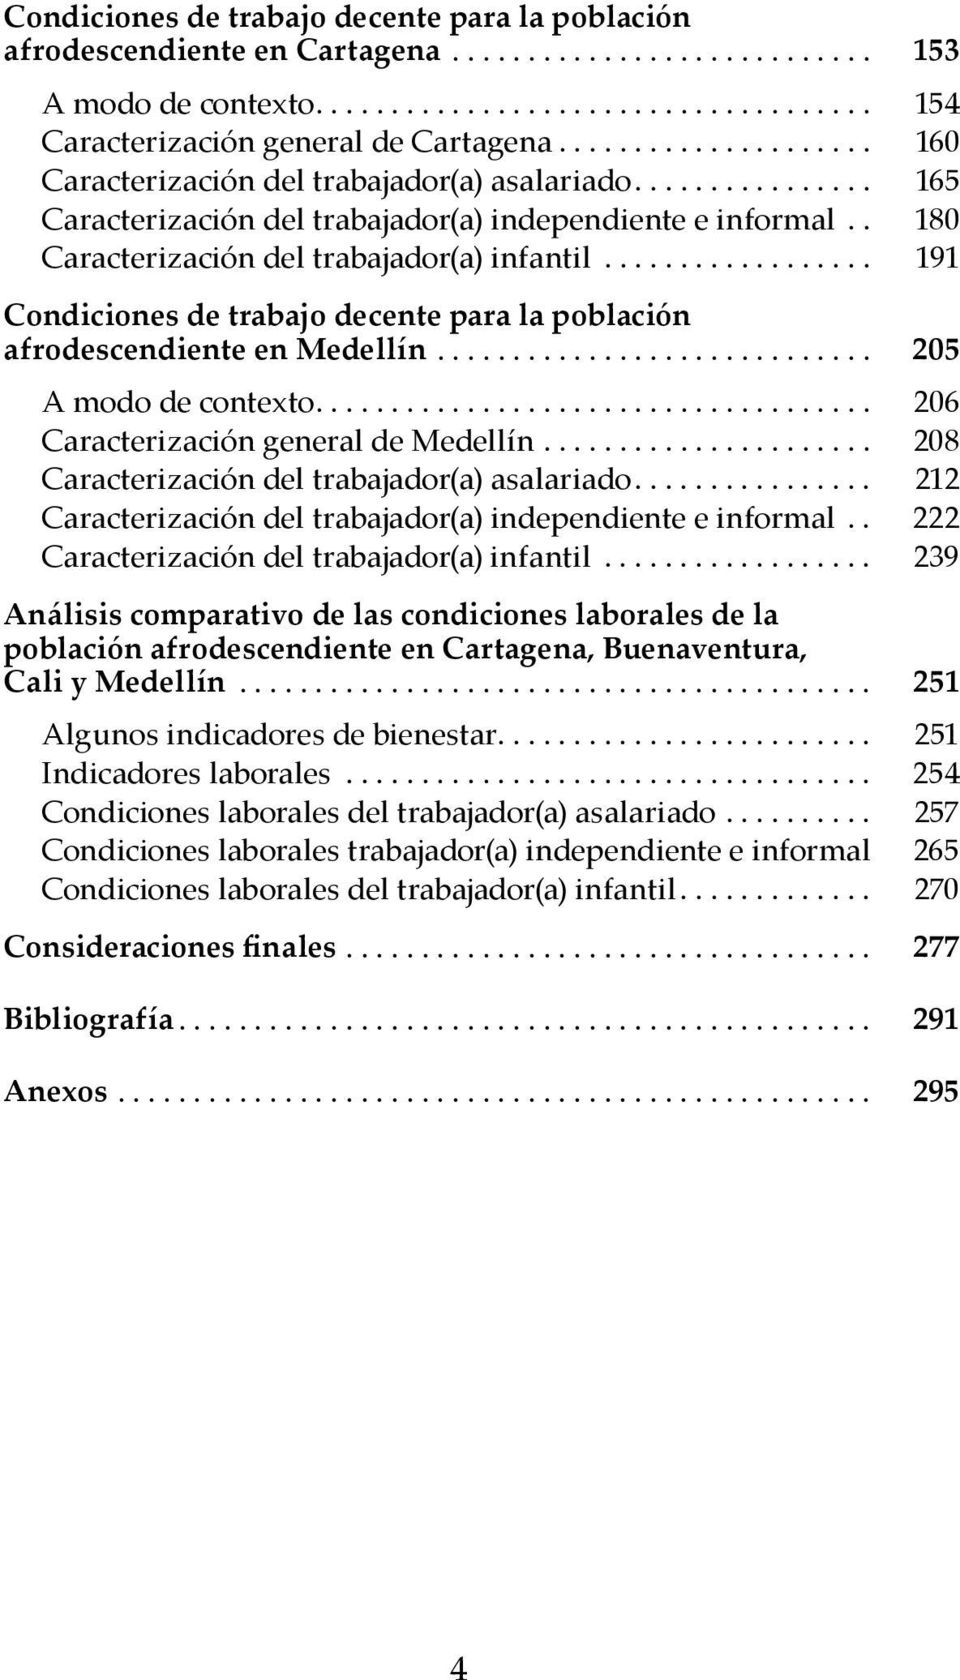 .. 205 A modo de contexto.... 206 Caracterización general de Medellín... 208 Caracterización del trabajador(a) asalariado.... 212 Caracterización del trabajador(a) independiente e informal.